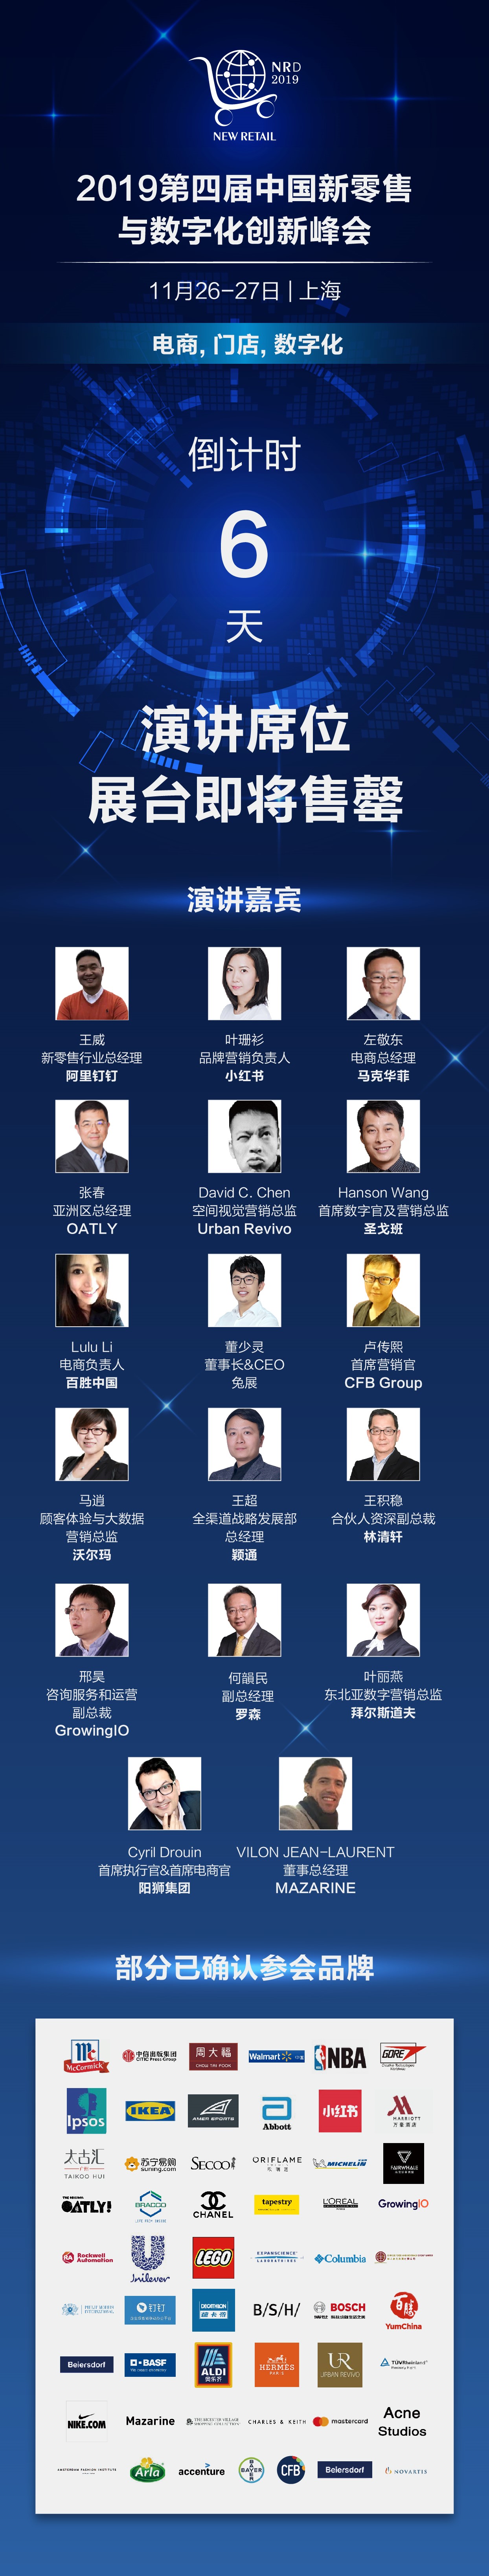 2019第四届中国新零售与数字化创新峰会（上海）